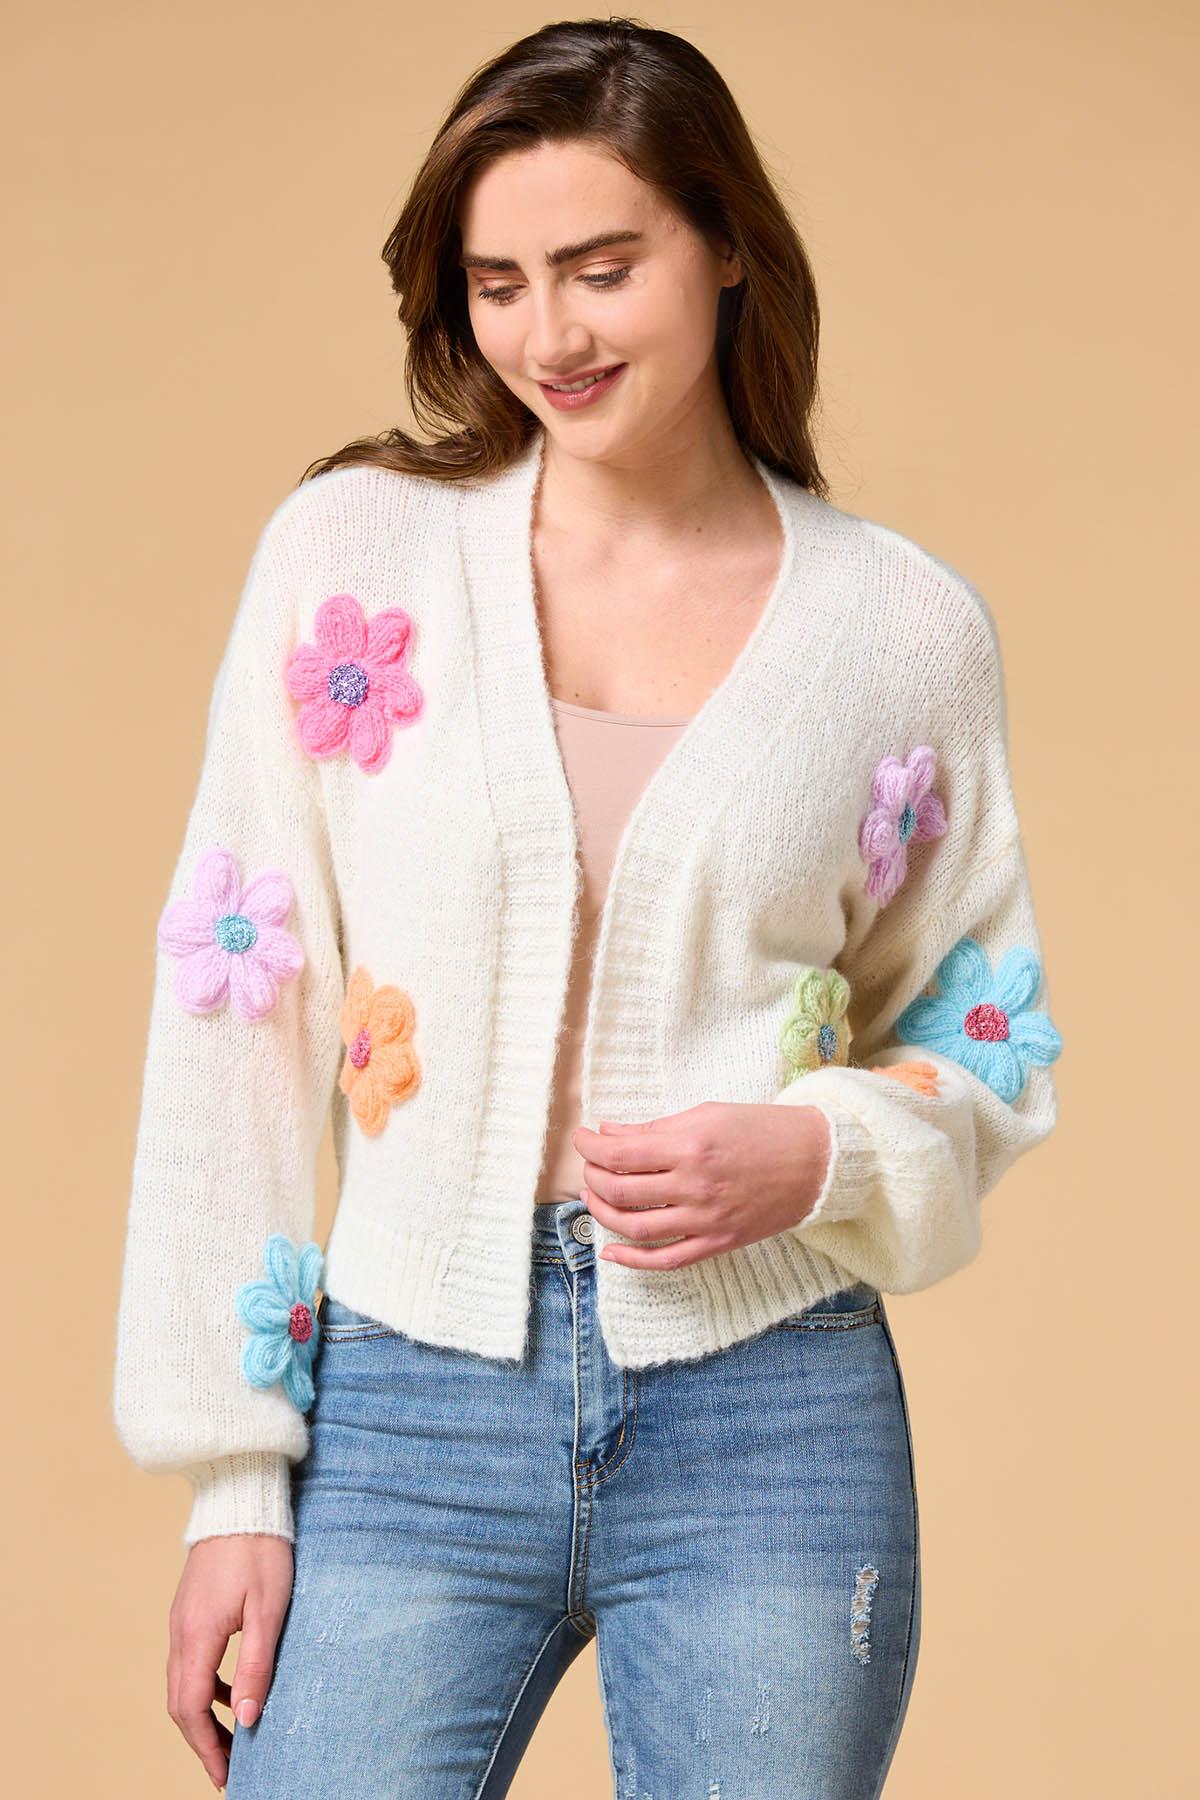 誠実 【PORTERNA】Earth Flower Sweater - レディースファッション